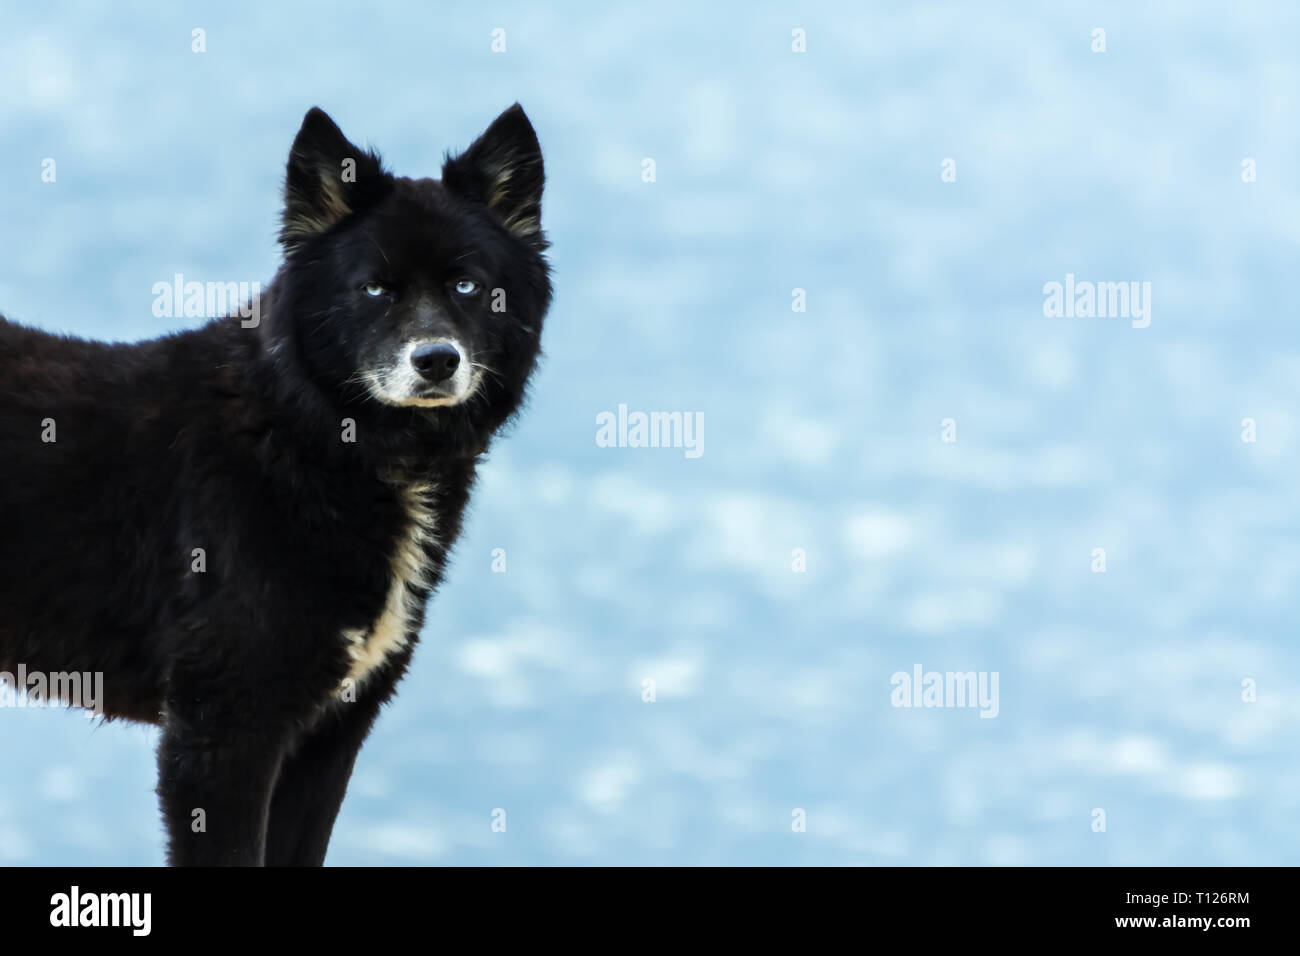 2018 November - Paraty, Brasilien. Schwarzer Hund, ähnlich wie ein Wolf oder ein Bär, stehend auf dem Strand. Stockfoto